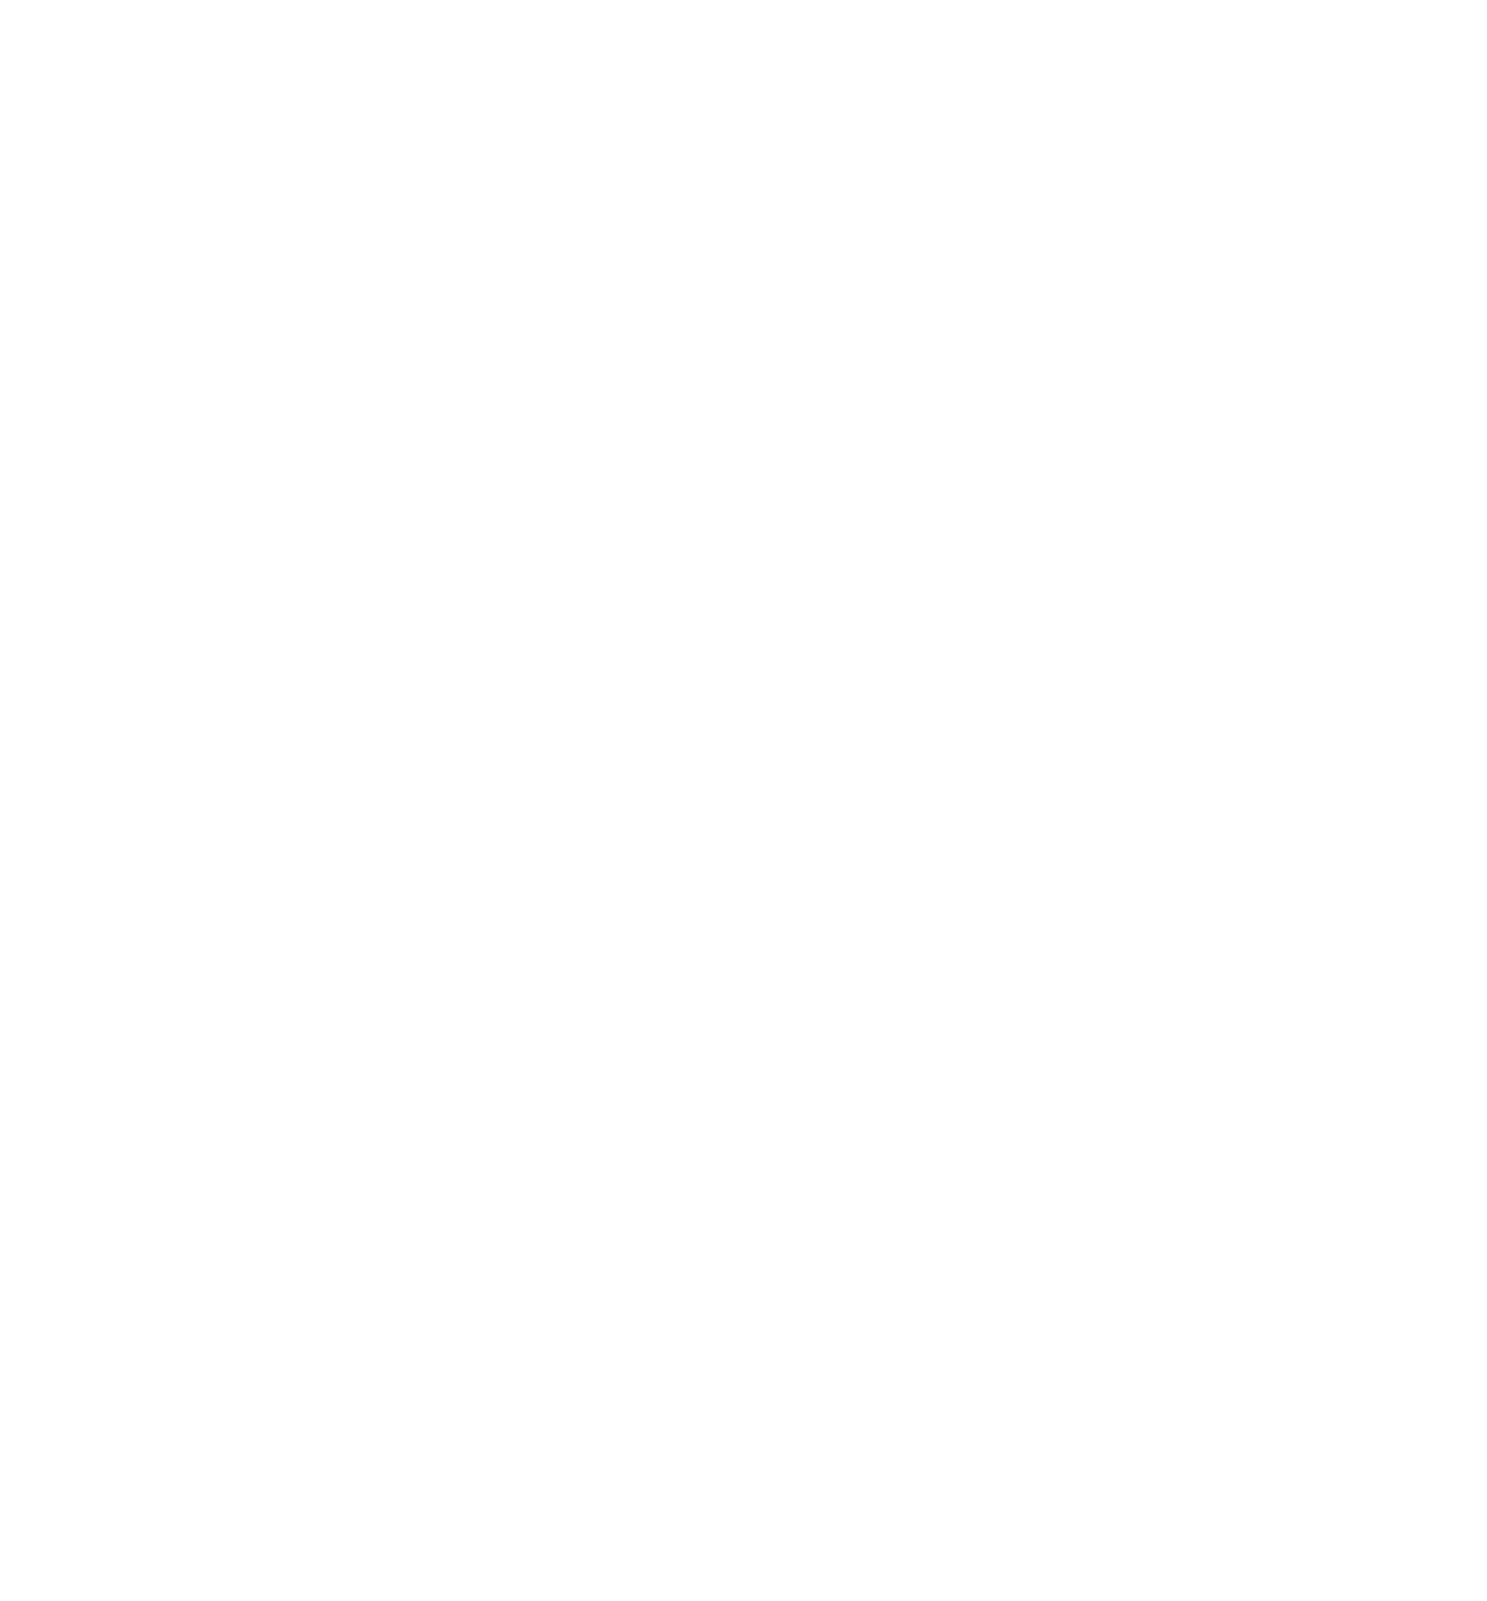 Méliuz logo pour fonds sombres (PNG transparent)